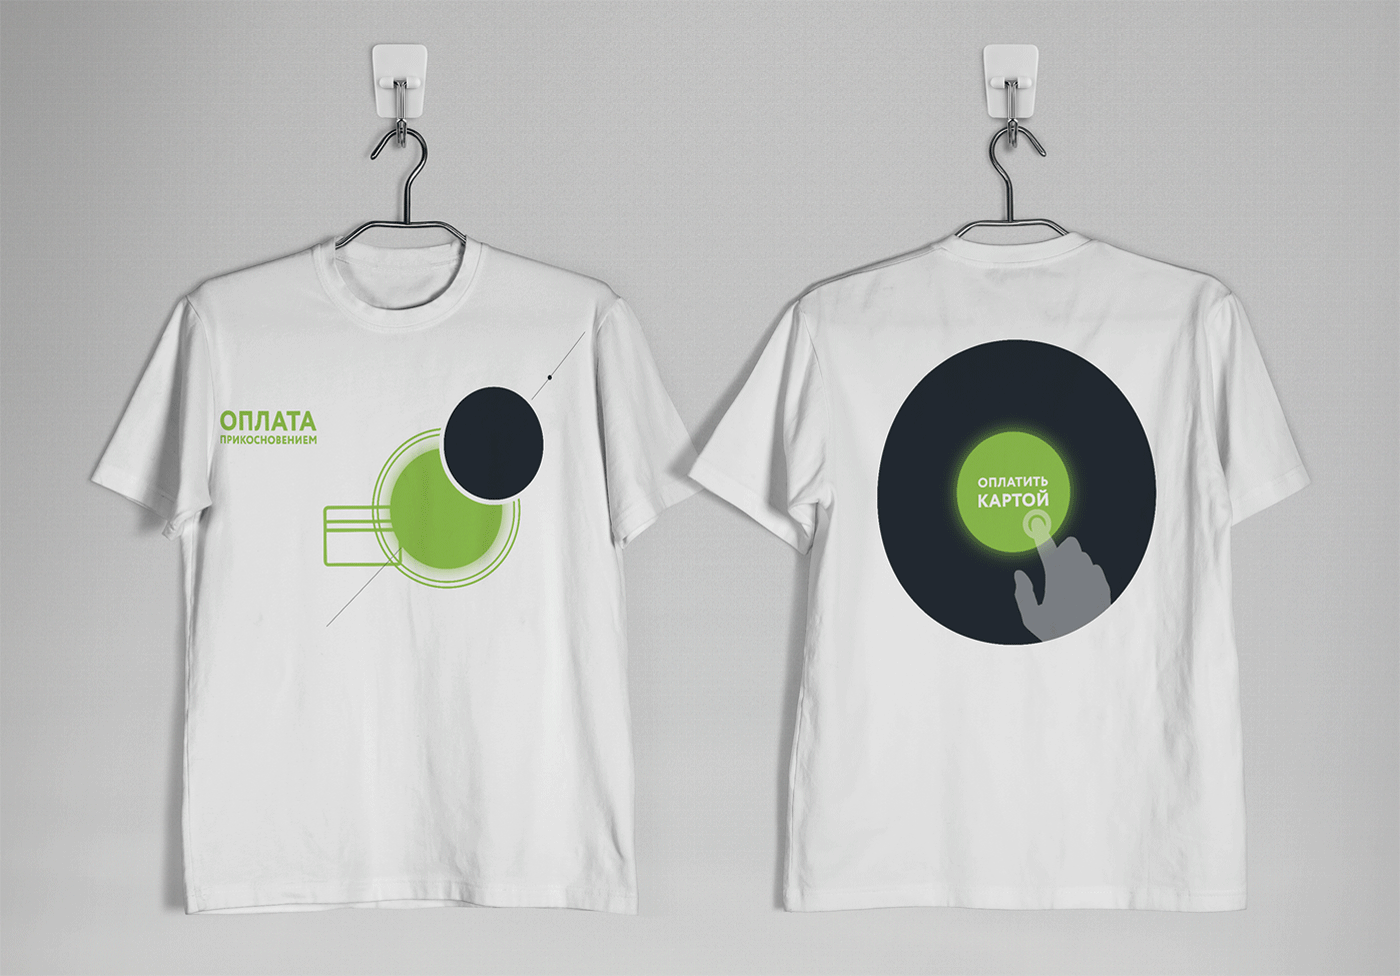 Дизайн футболок для Сбербанка